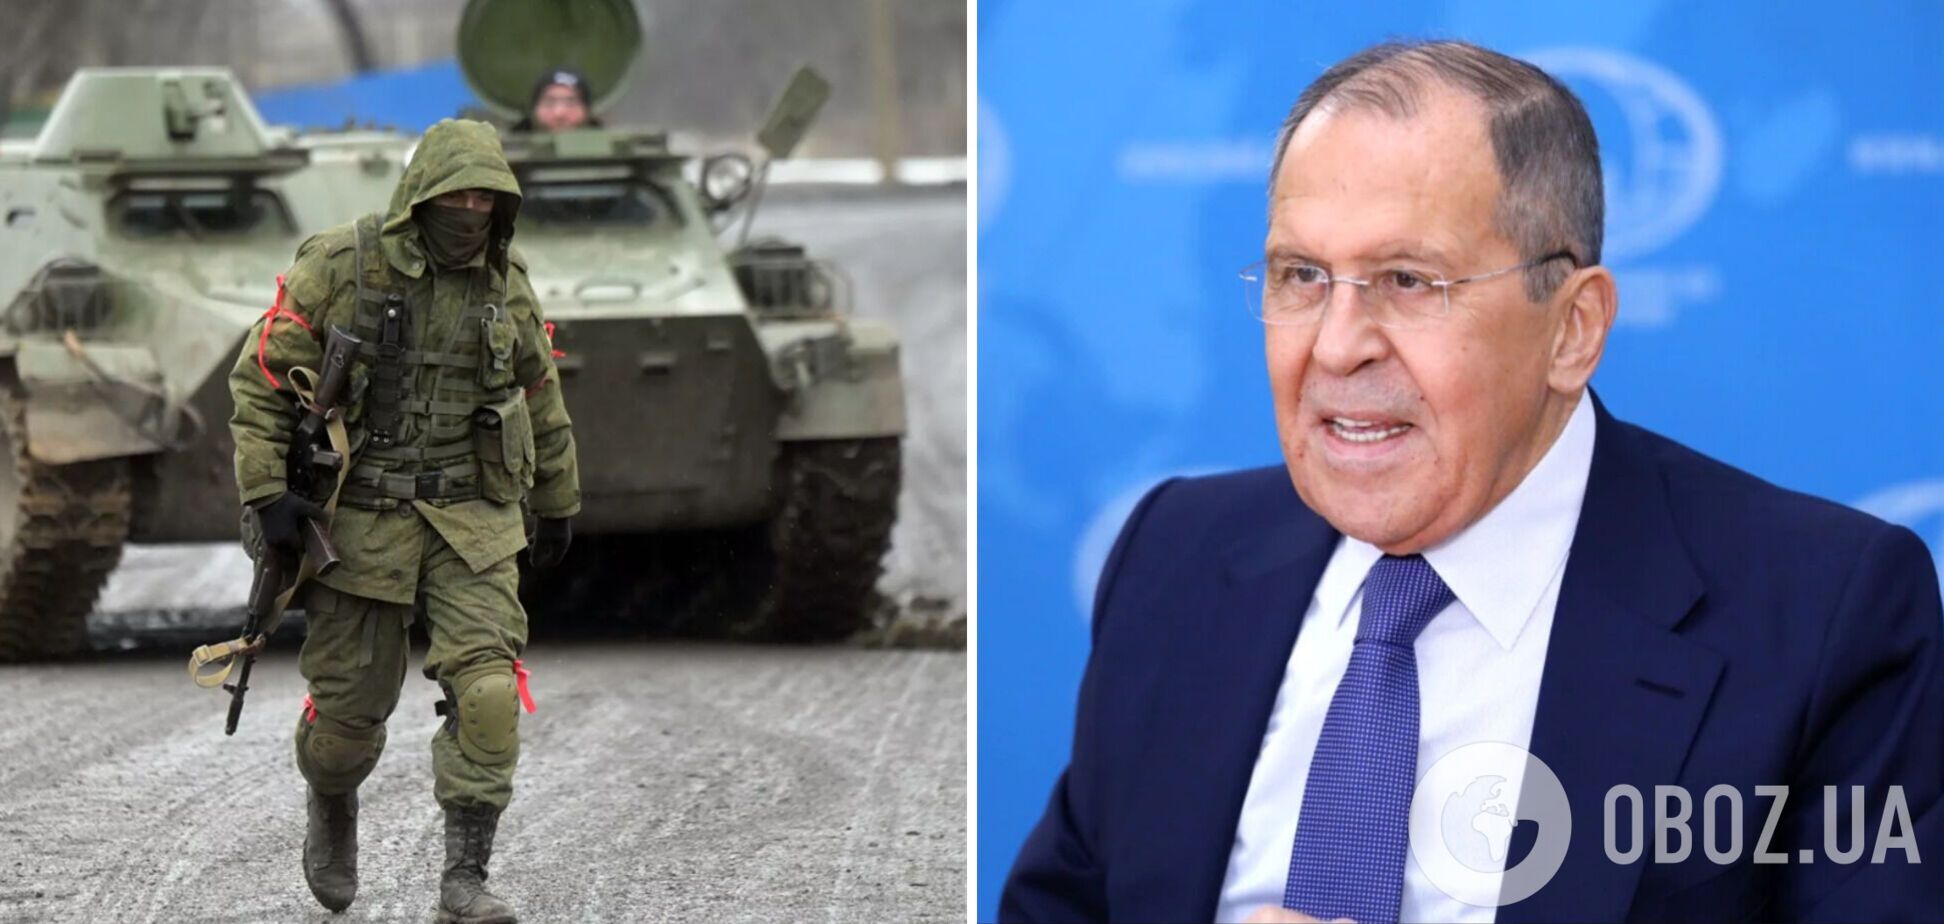 Лавров после встречи с Кулебой заявил, что РФ не нападала на Украину и не планирует агрессии против других стран